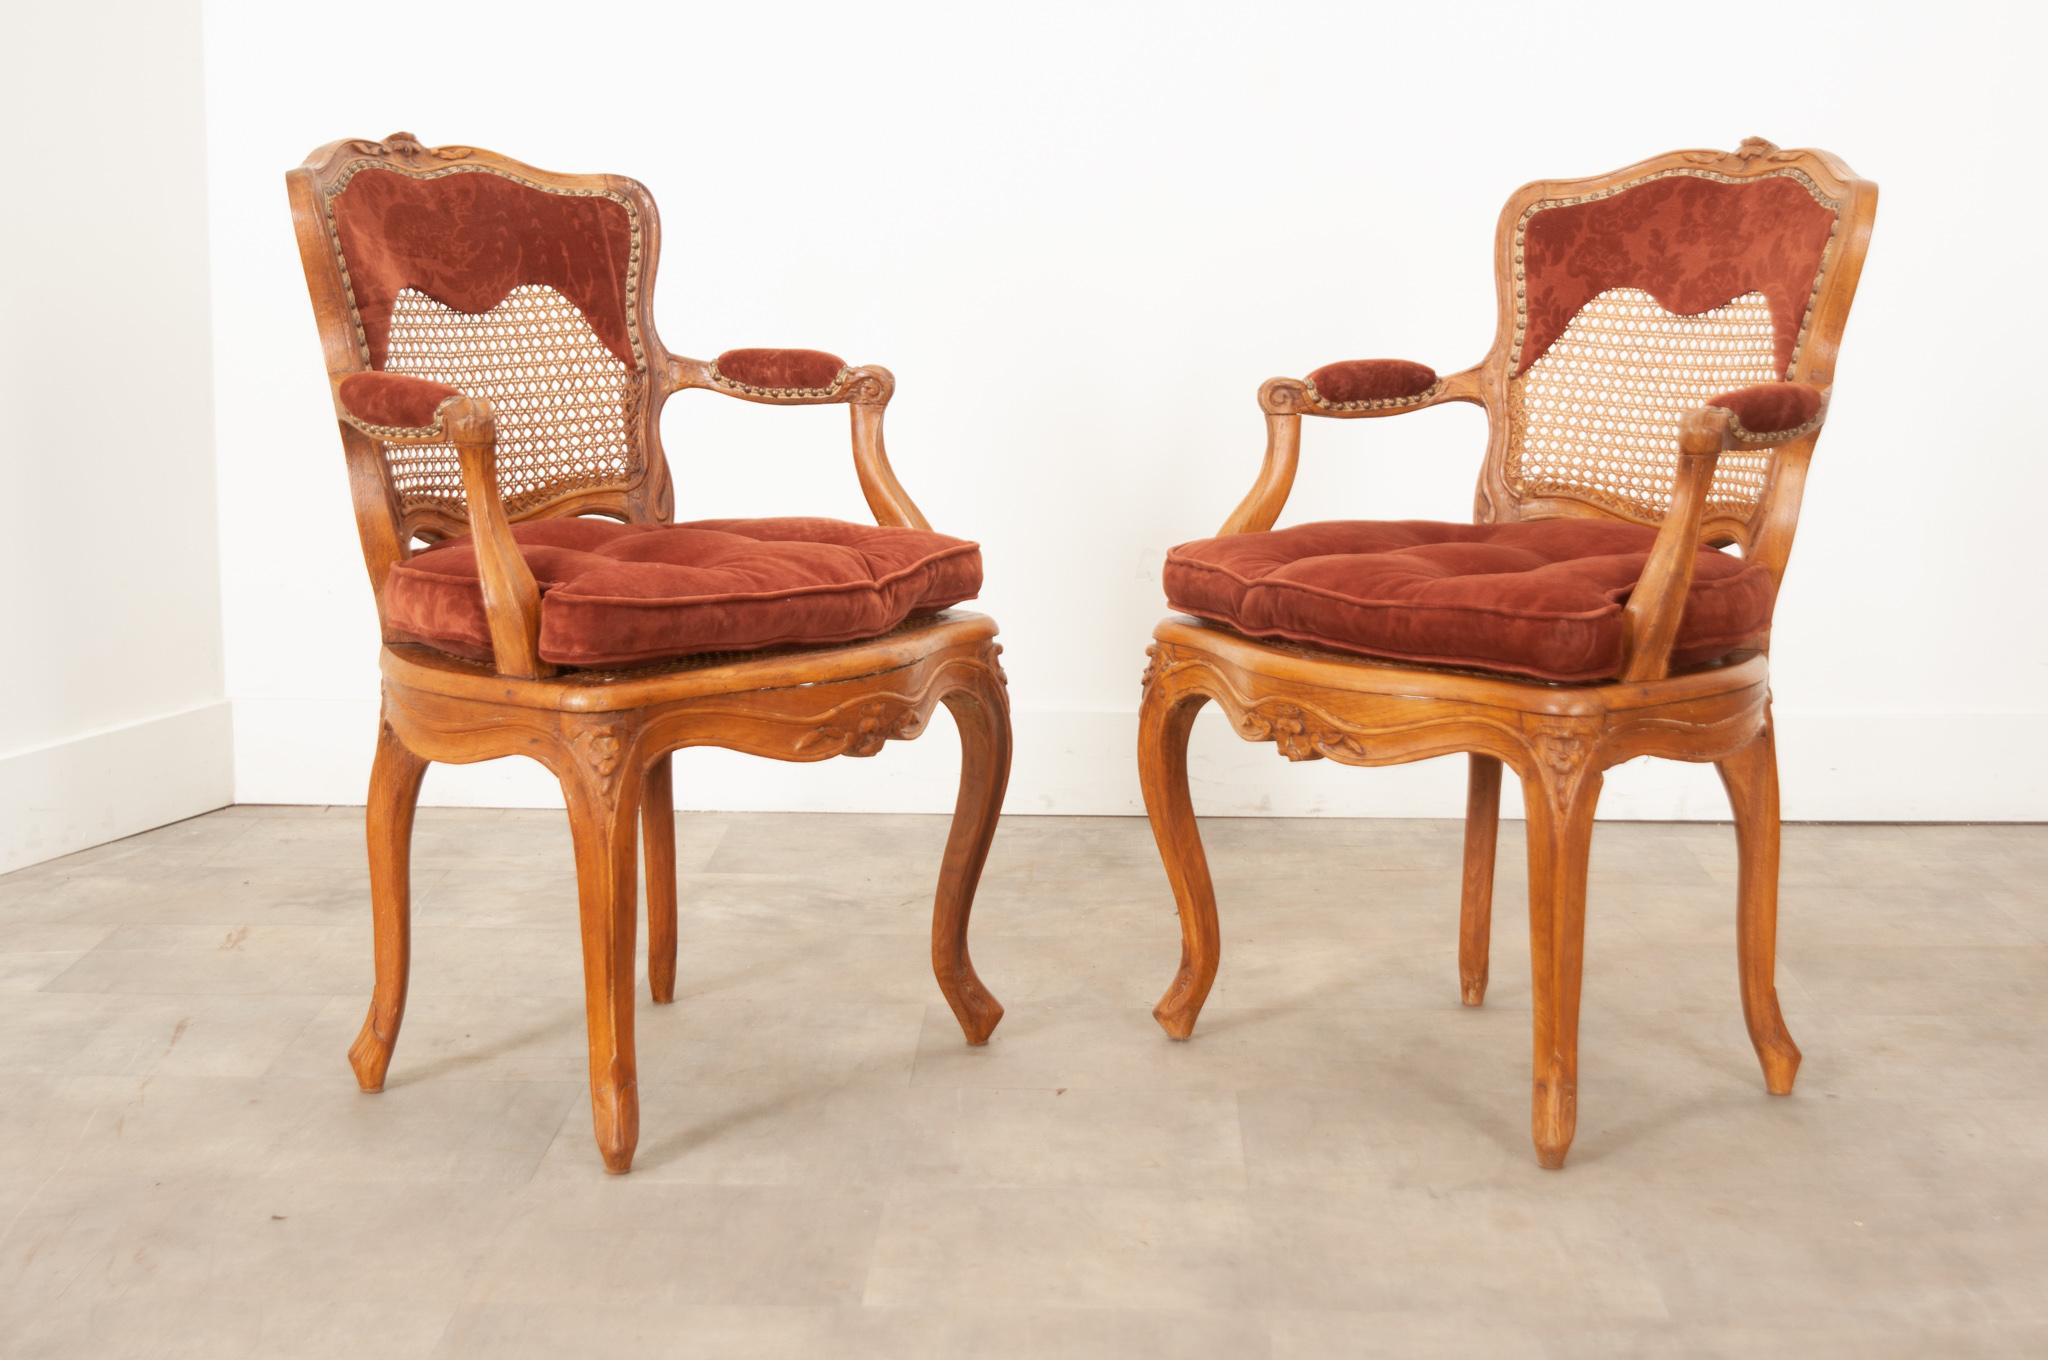 Paire de chaises en chêne de style Louis XV du XVIIIe siècle. Tapissé de tissu velours bordeaux, la hauteur d'assise est de 16 ¾